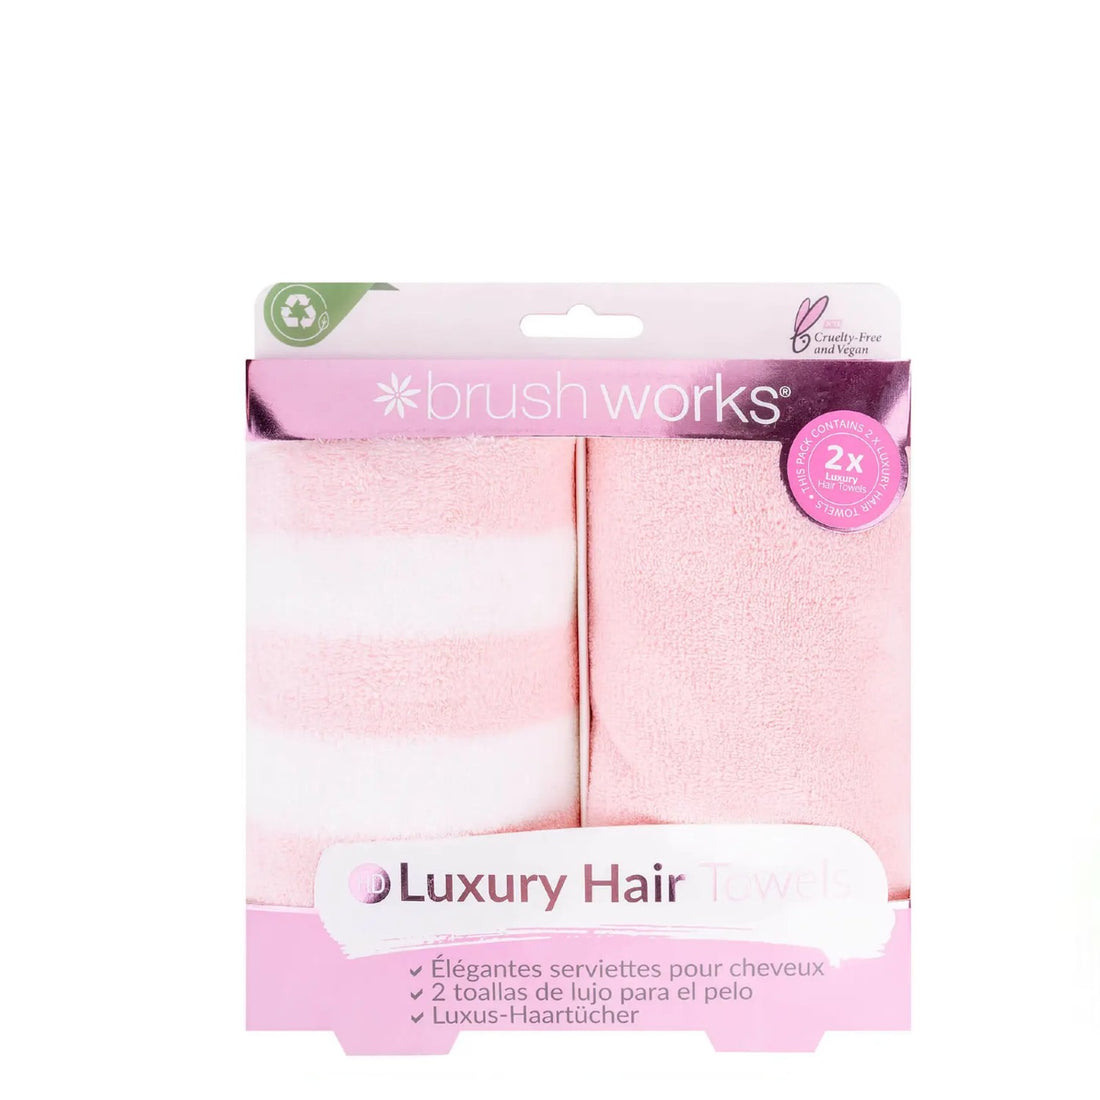 Brushworks Luxury Hair Towels - 2 Pack